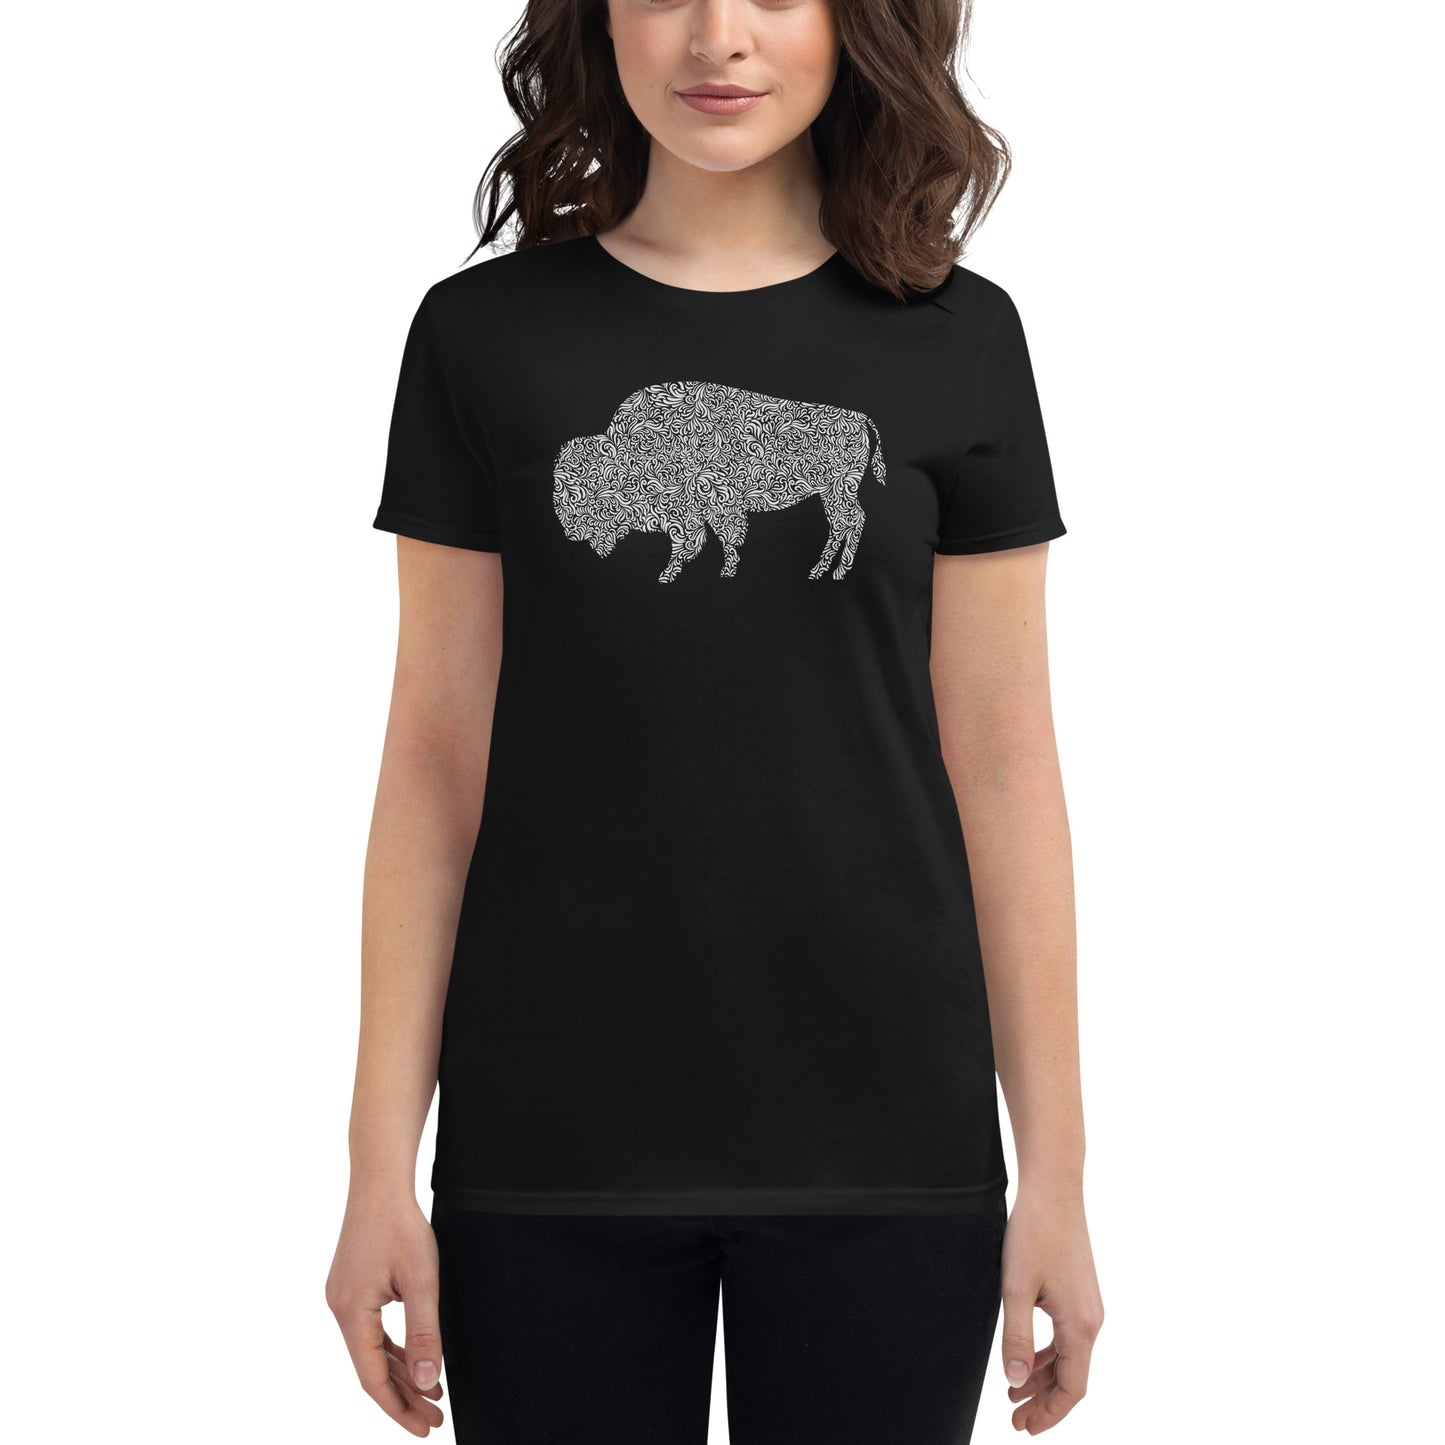 Women's Fashion Fit T-shirt - Floral Bison